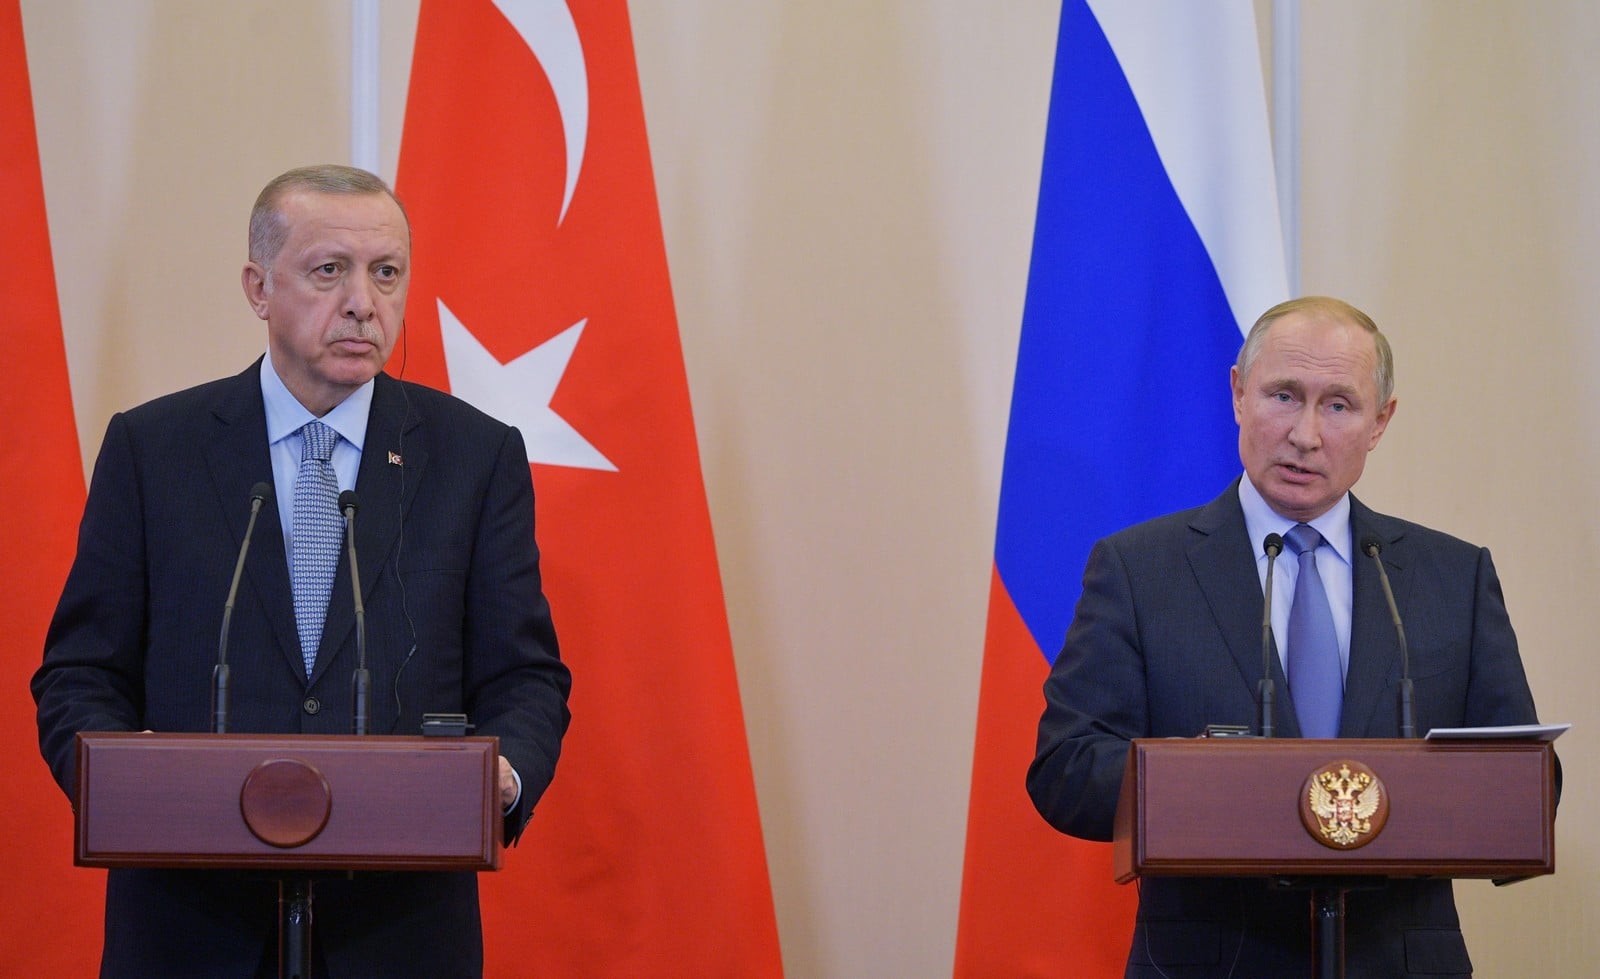 Vladimir Poutine et Recep Tayyip Erdogan lors de la réunion à Sotchi,le 22 octobre 2019 : deux tenants de l'eurasisme,
Auteurs  : CHINE NOUVELLE/SIPA,
Numéro de reportage  : 00929247_000003.